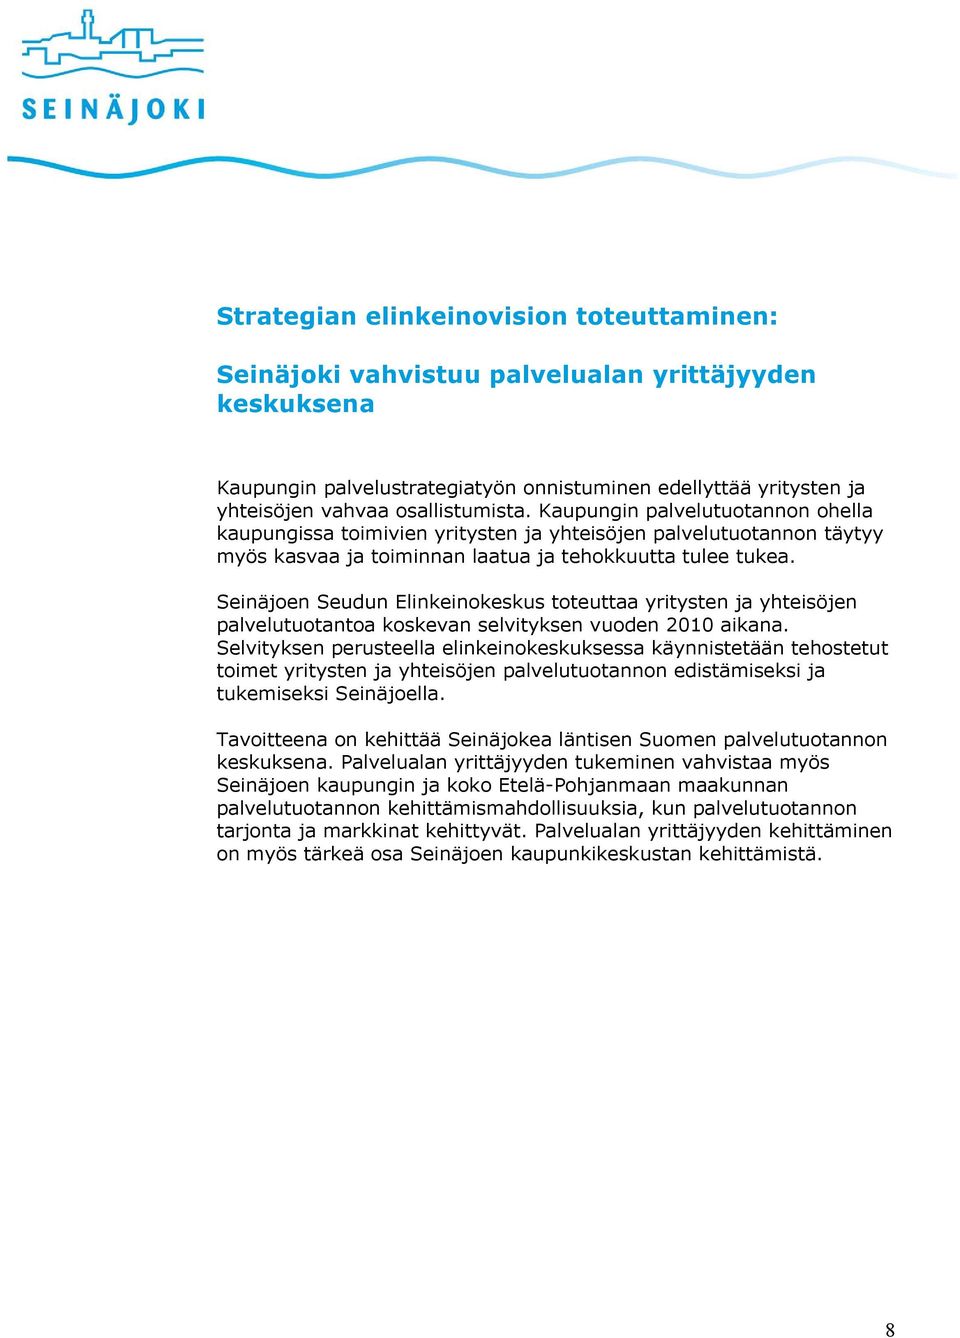 Seinäjoen Seudun Elinkeinokeskus toteuttaa yritysten ja yhteisöjen palvelutuotantoa koskevan selvityksen vuoden 2010 aikana.